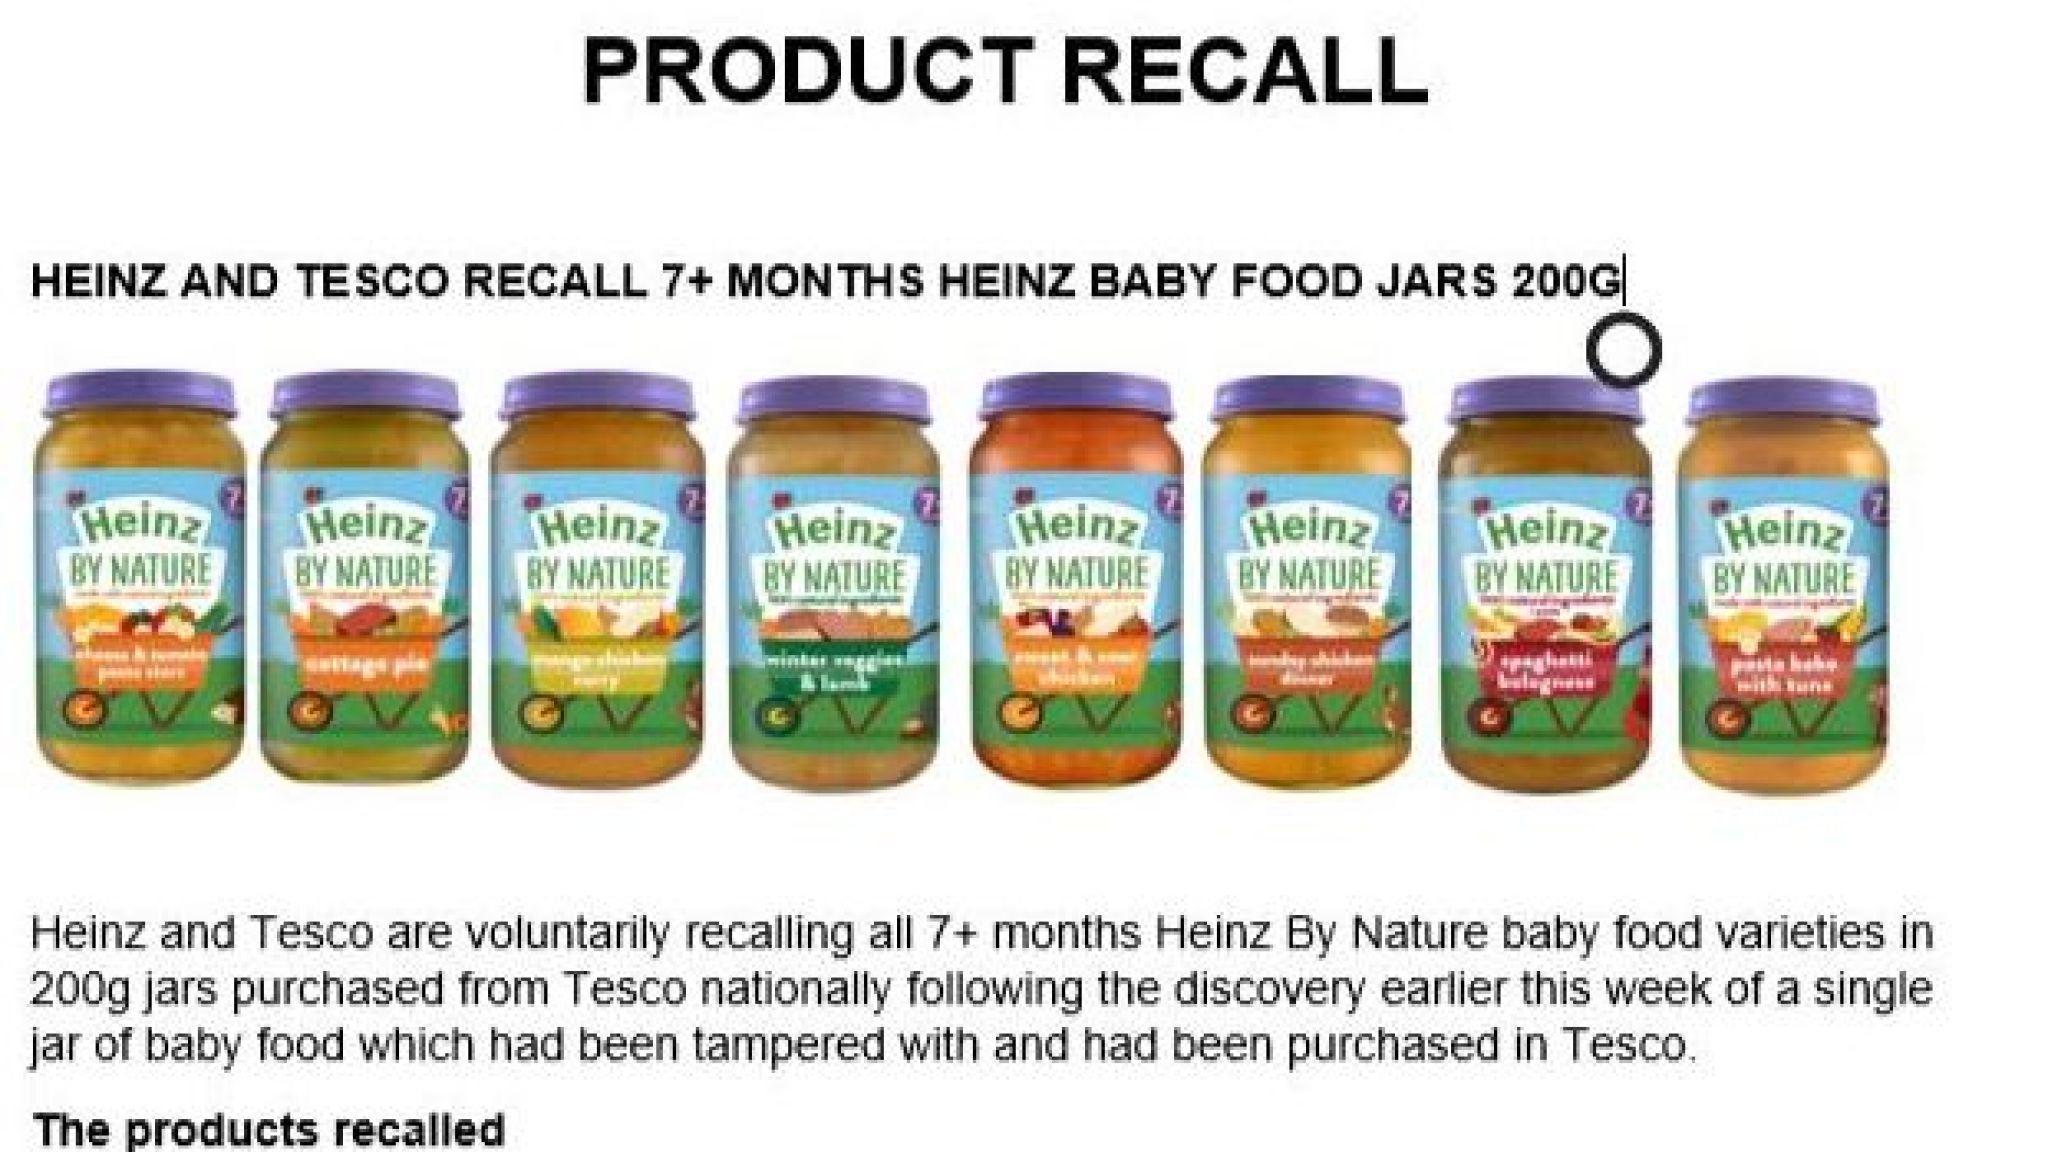 Heinz Baby Food Jars , HD Wallpaper & Backgrounds